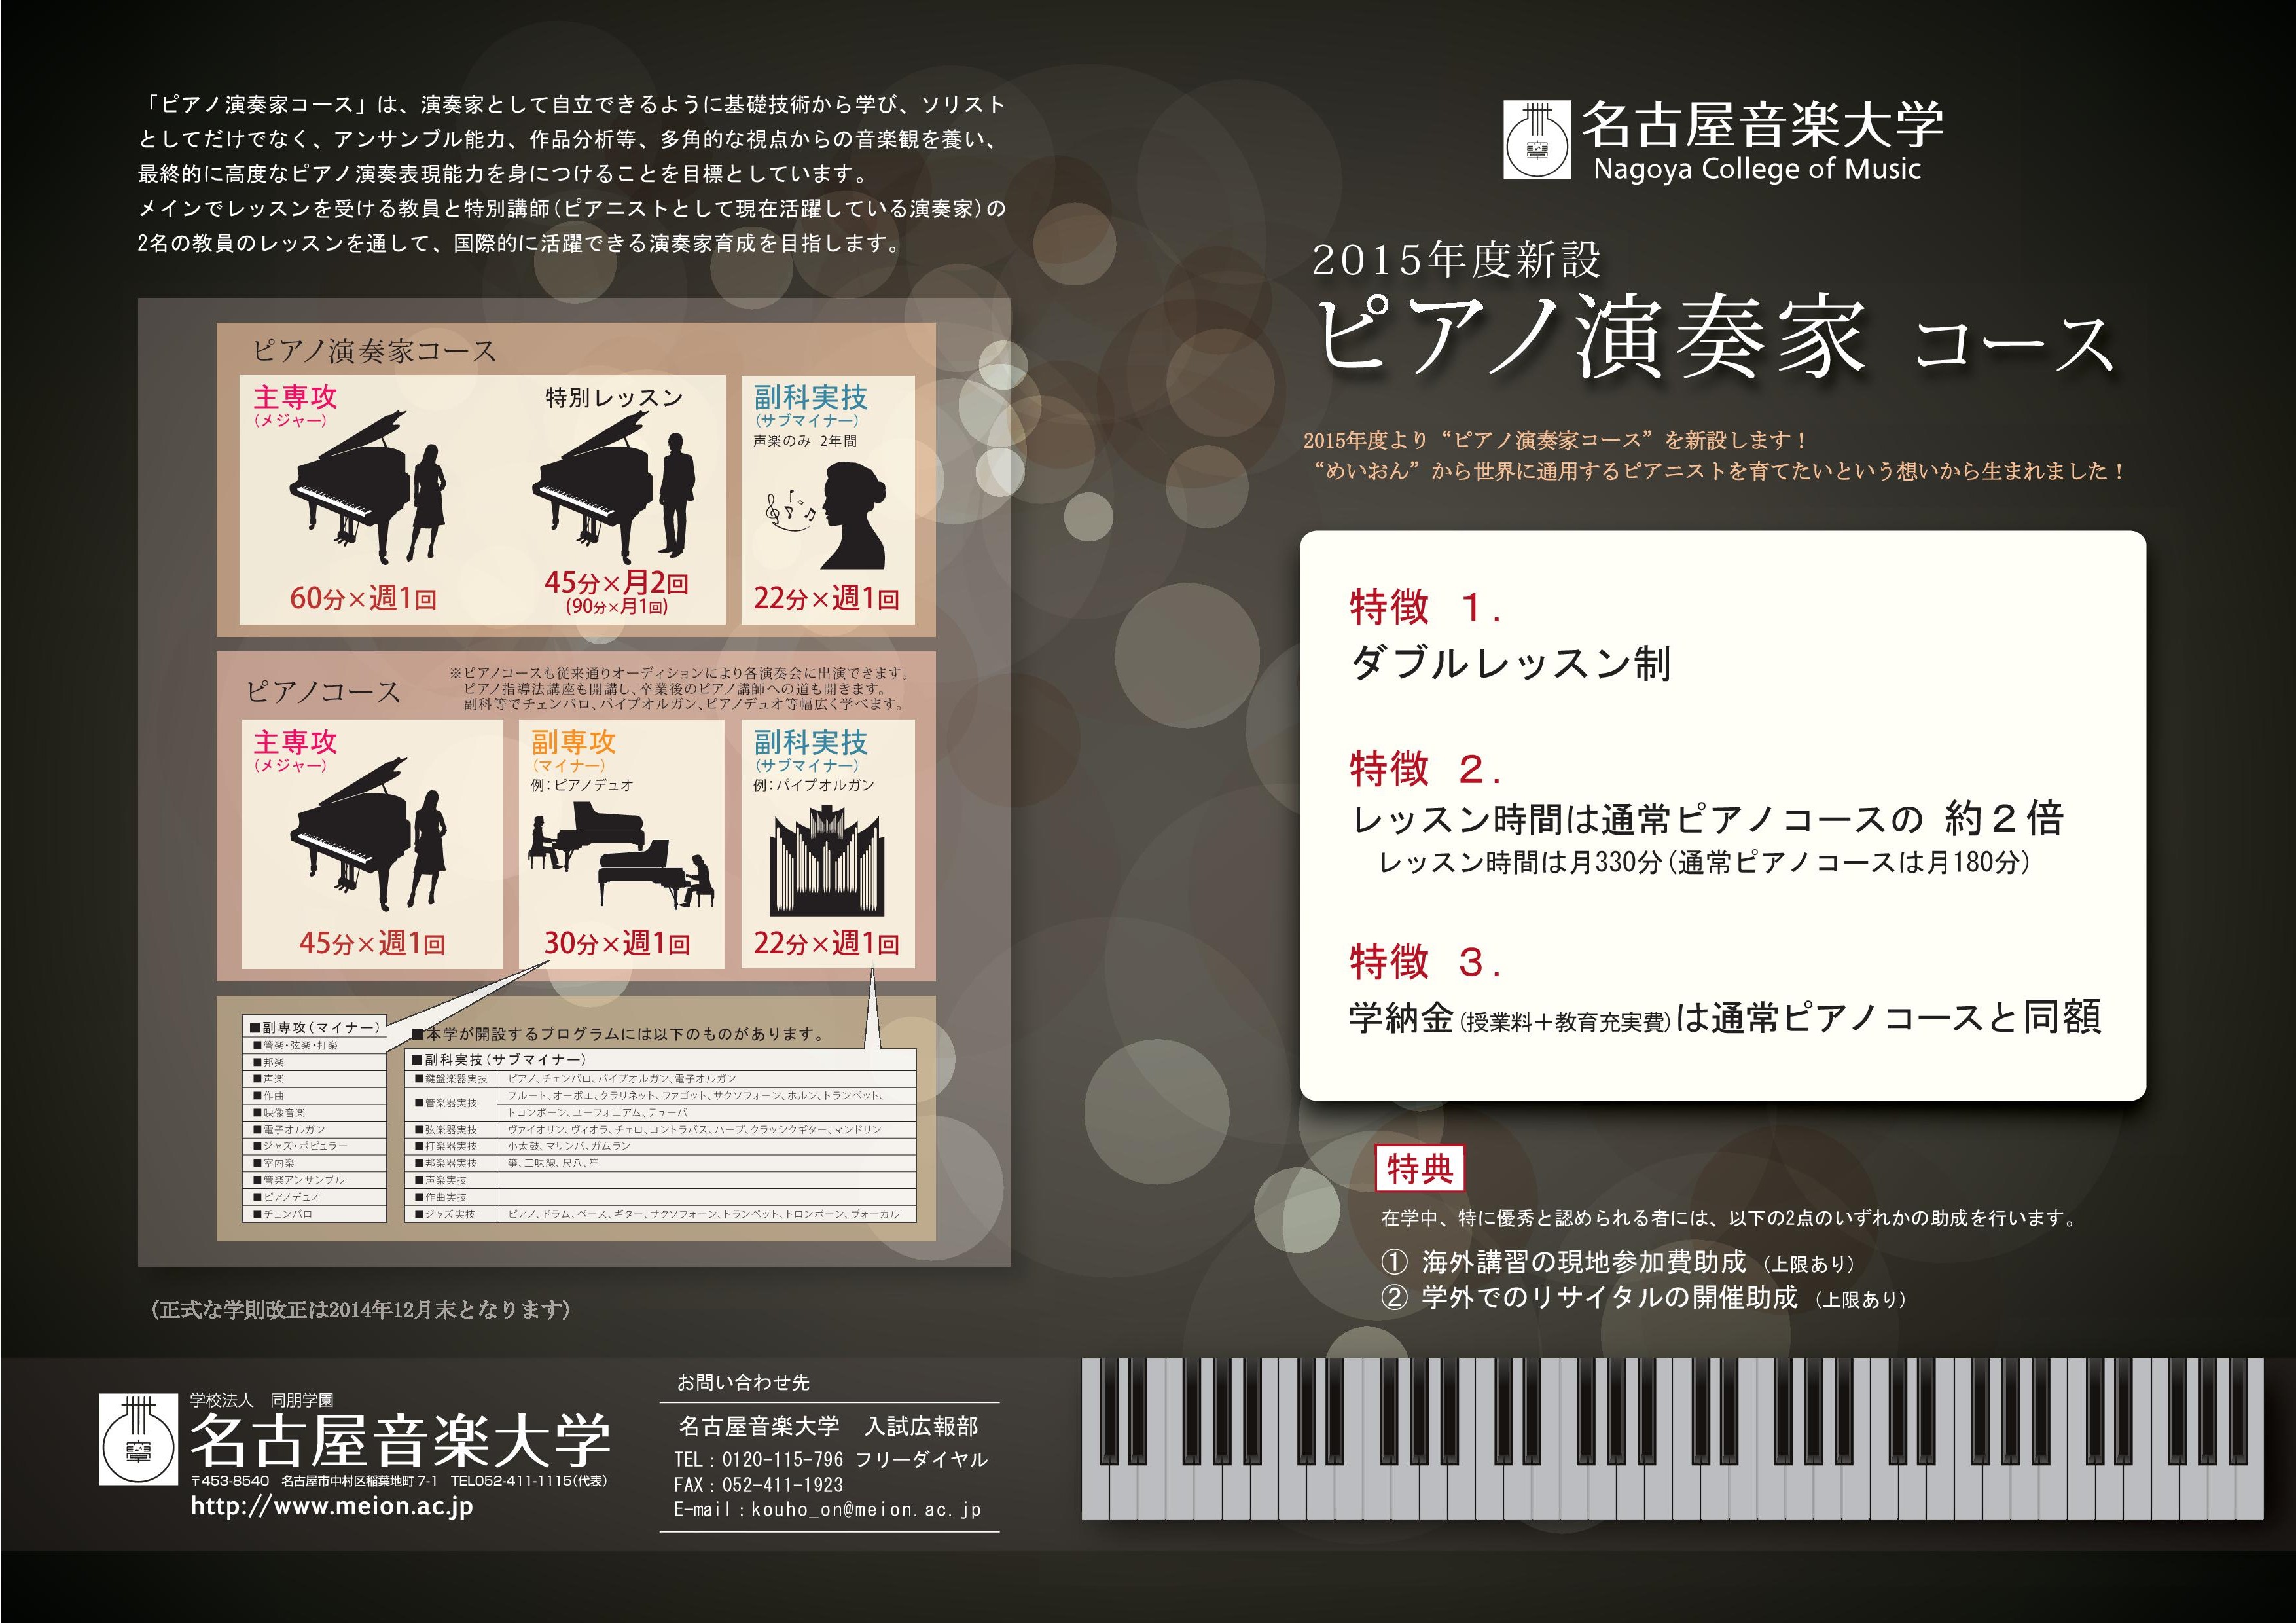 piano-8 kuro